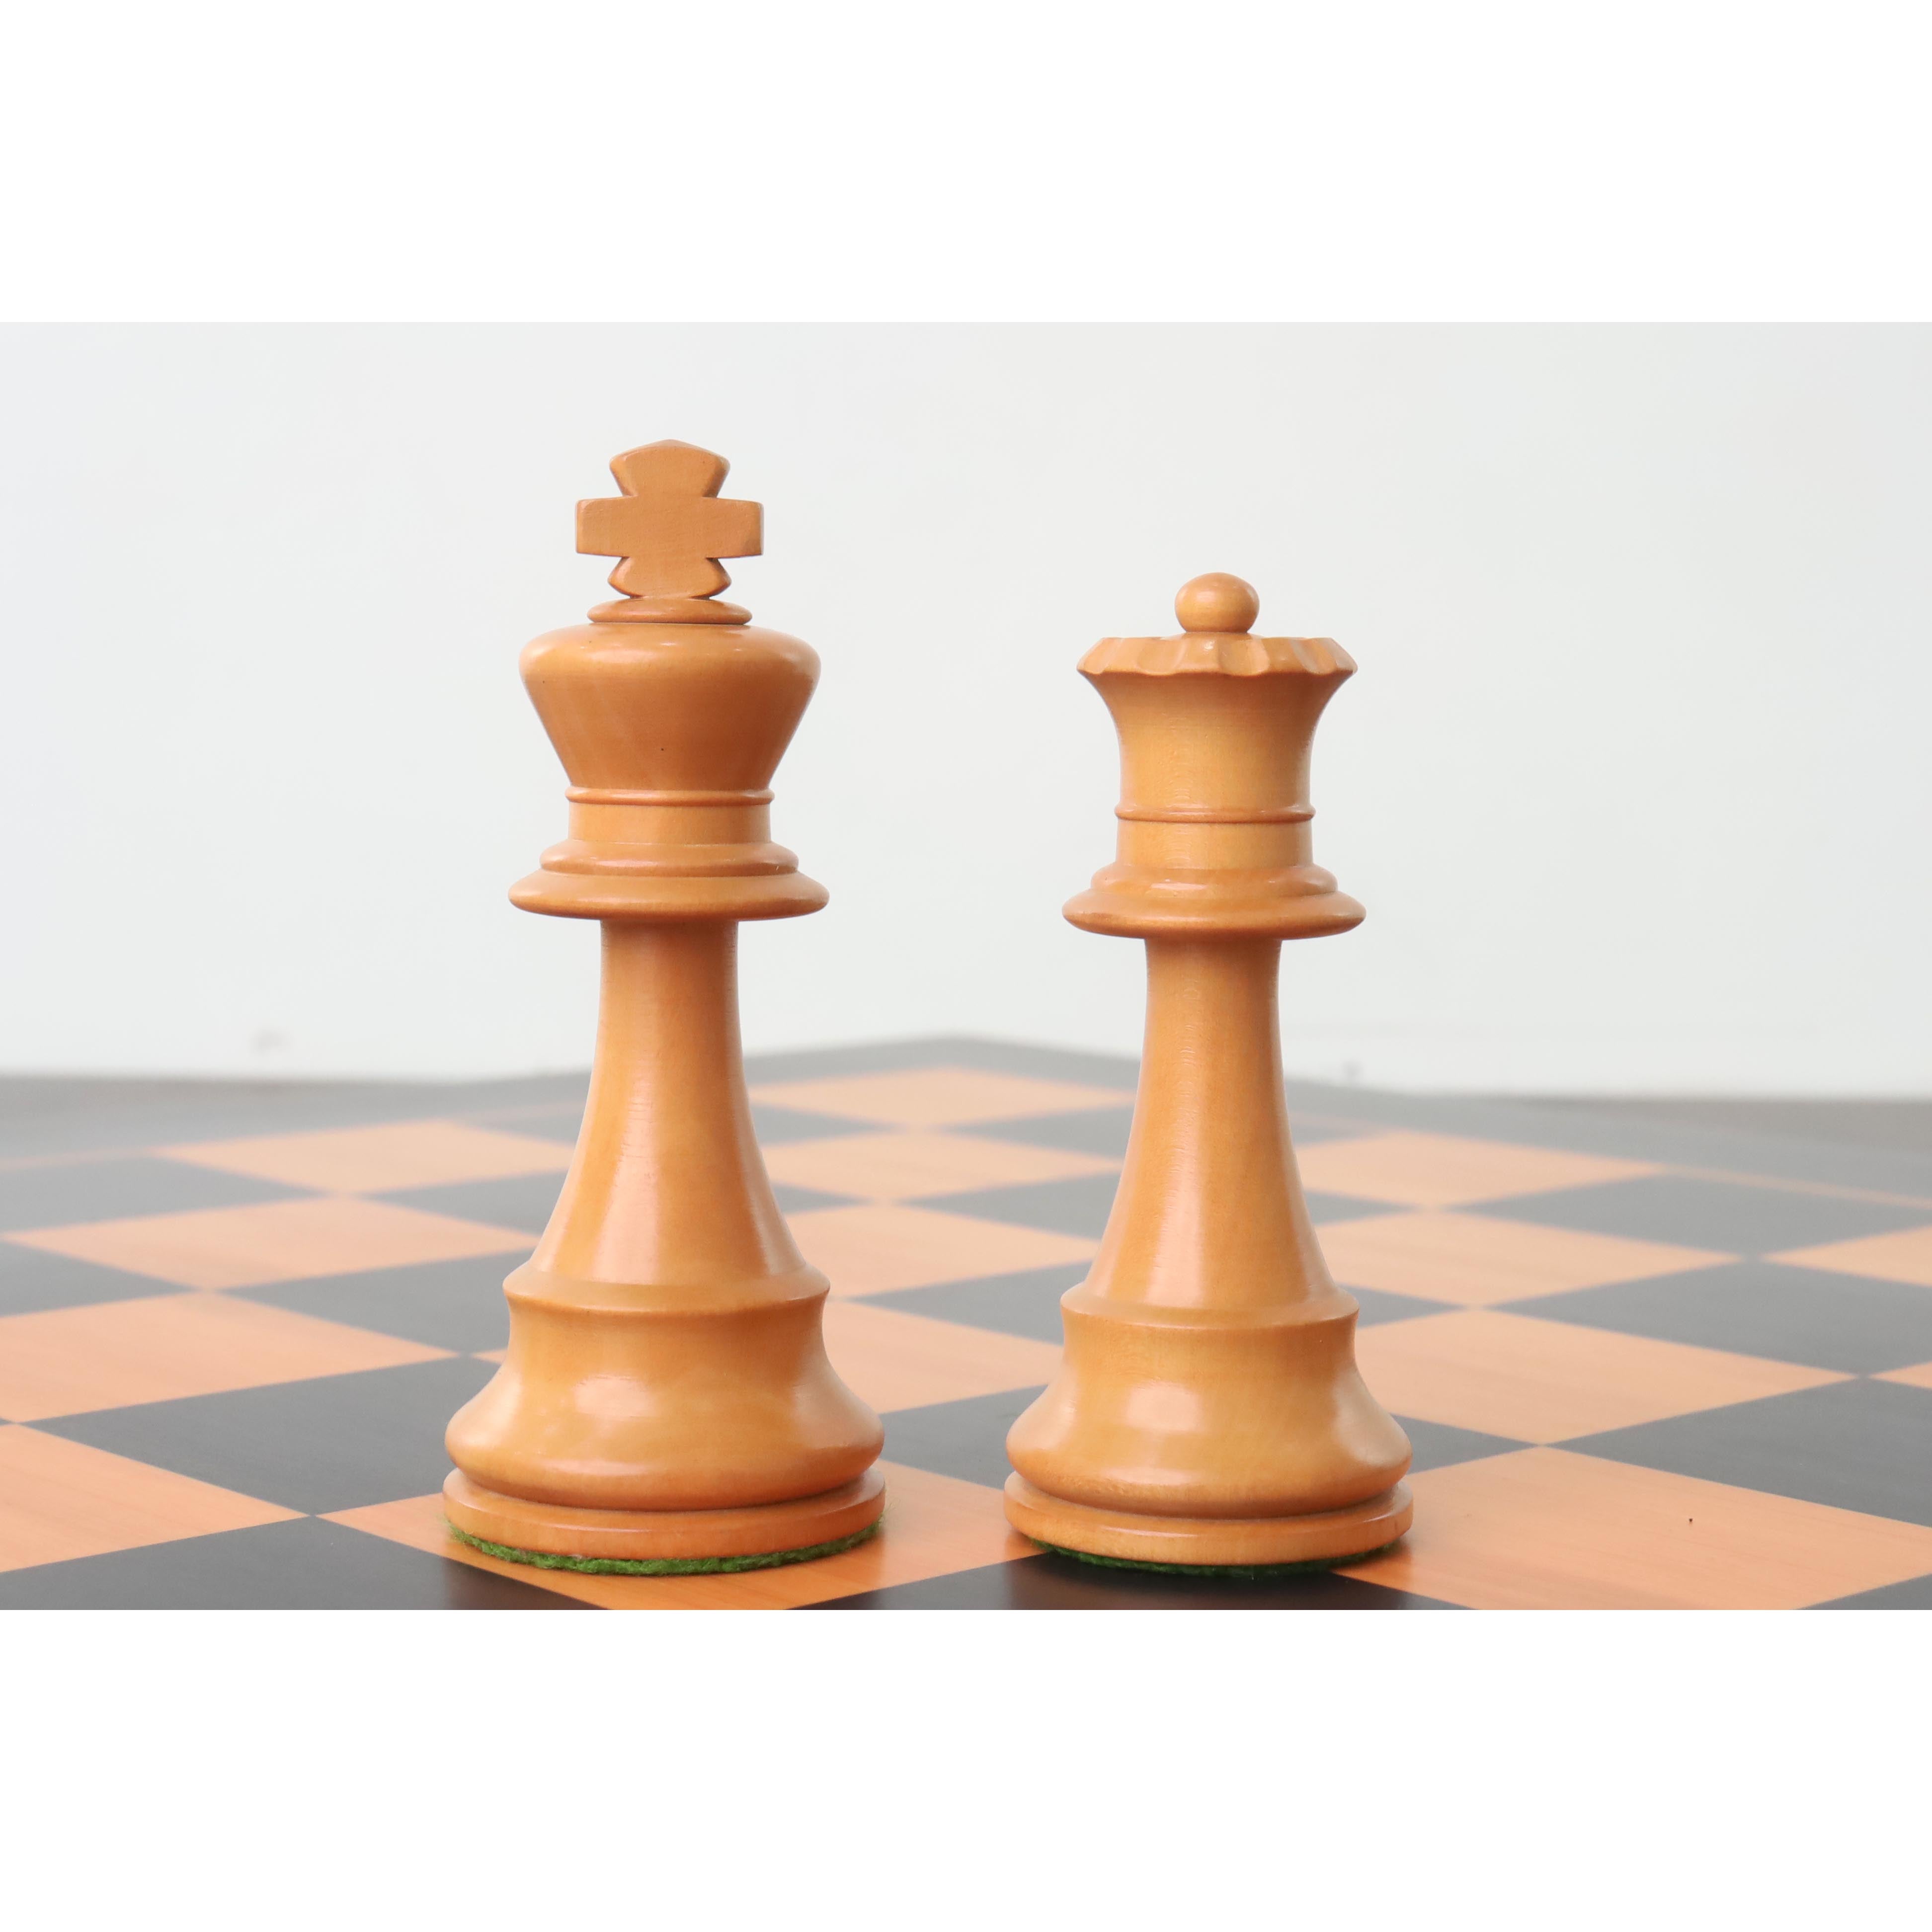 French Lardy Chess Pieces Staunton Ebonised Boxwood 3 